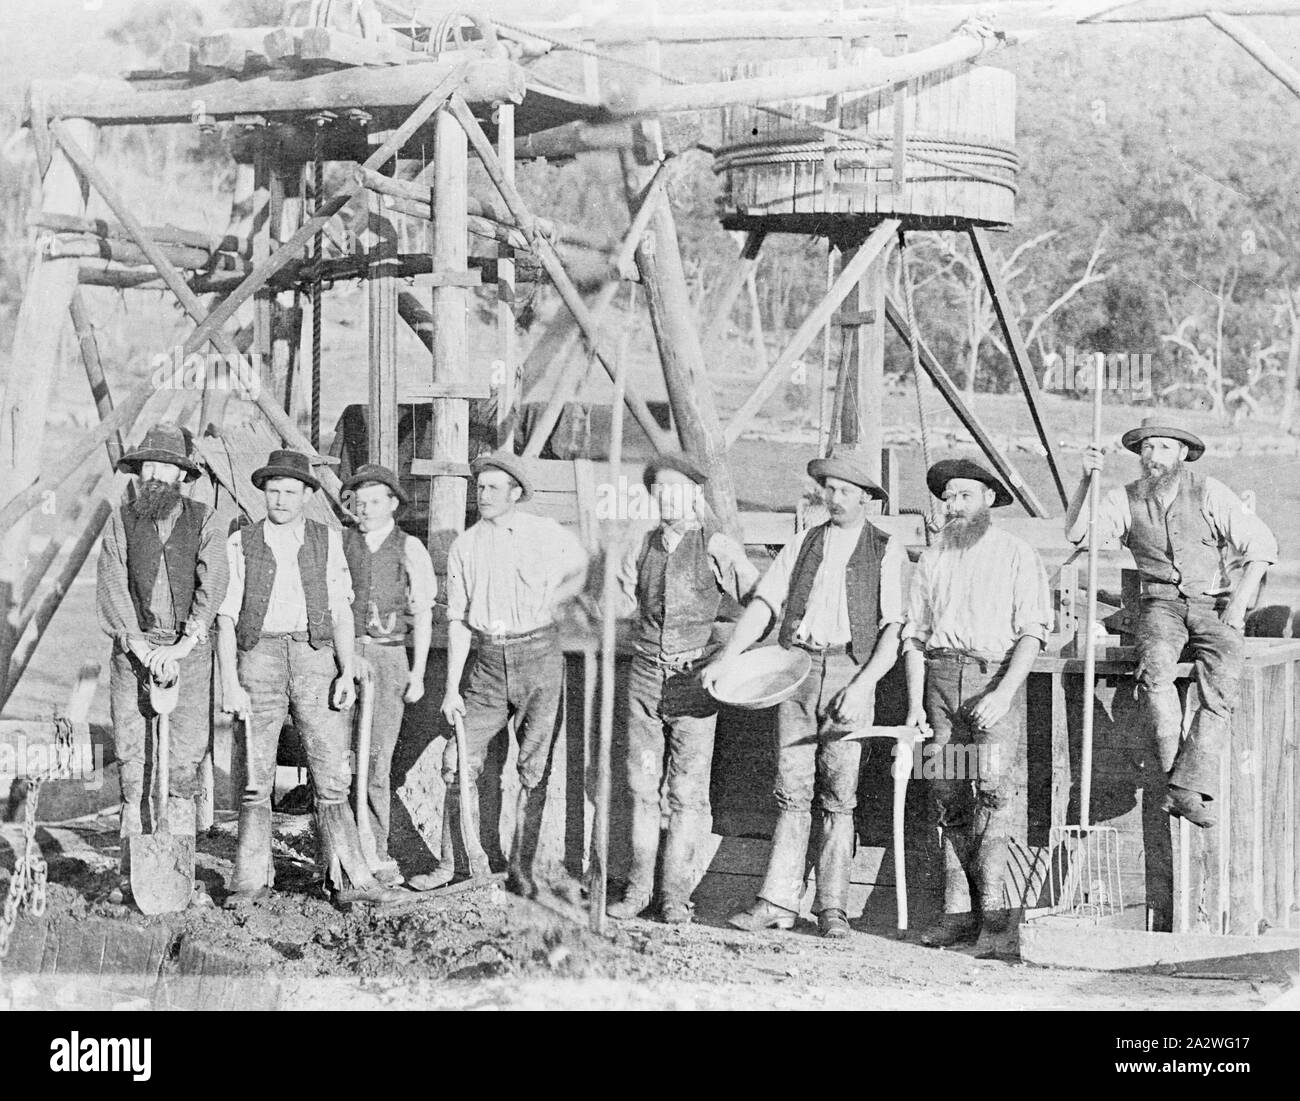 Negative - Bergleute vor Pferd Laune & Schacht Ventilkegel Kopf, Glenpatrick, Victoria, ca. 1880, eine Gruppe von Bergarbeitern auf eine Mine. Eine Laune ist im Hintergrund Stockfoto